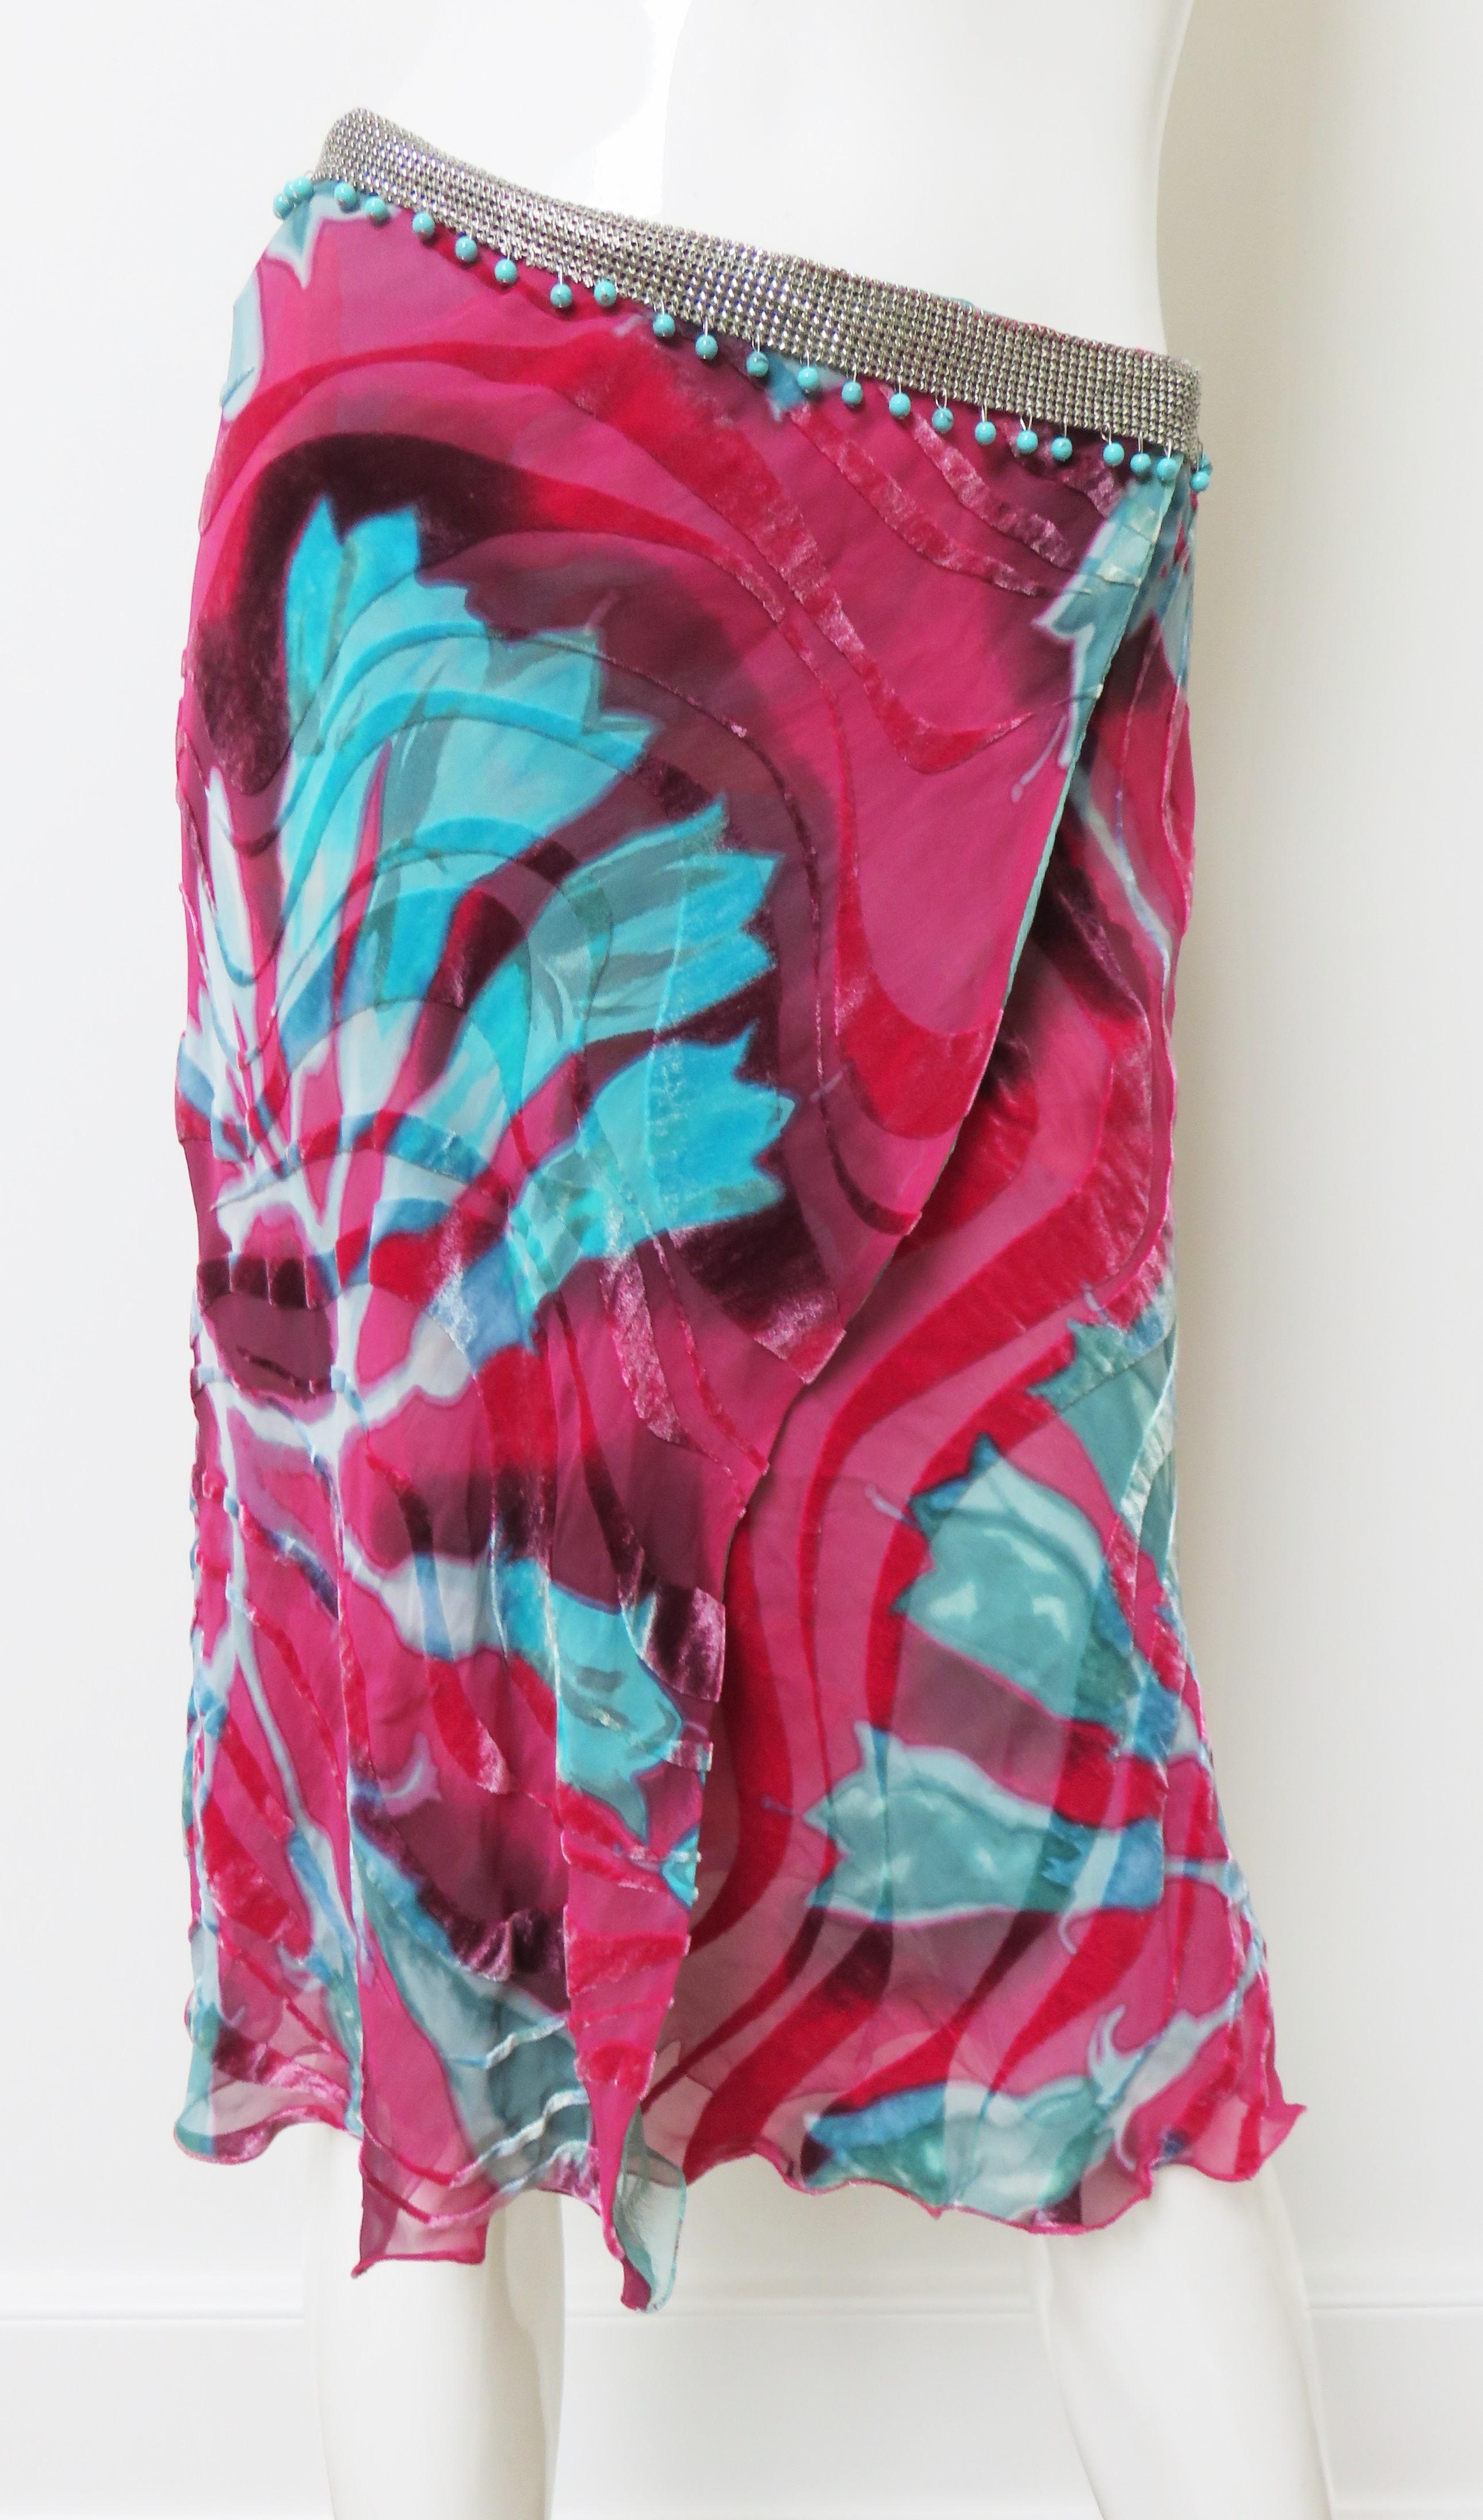 Ein wunderschön geschnittener Samt-Wickelrock von Gianni Versace mit einem auffälligen Blumenmuster in Rosa und Türkis.   Sie hat ein Band aus Metallgeflecht oder Kettengeflecht um die Taille mit baumelnden türkisfarbenen Perlen.  Es wird in der